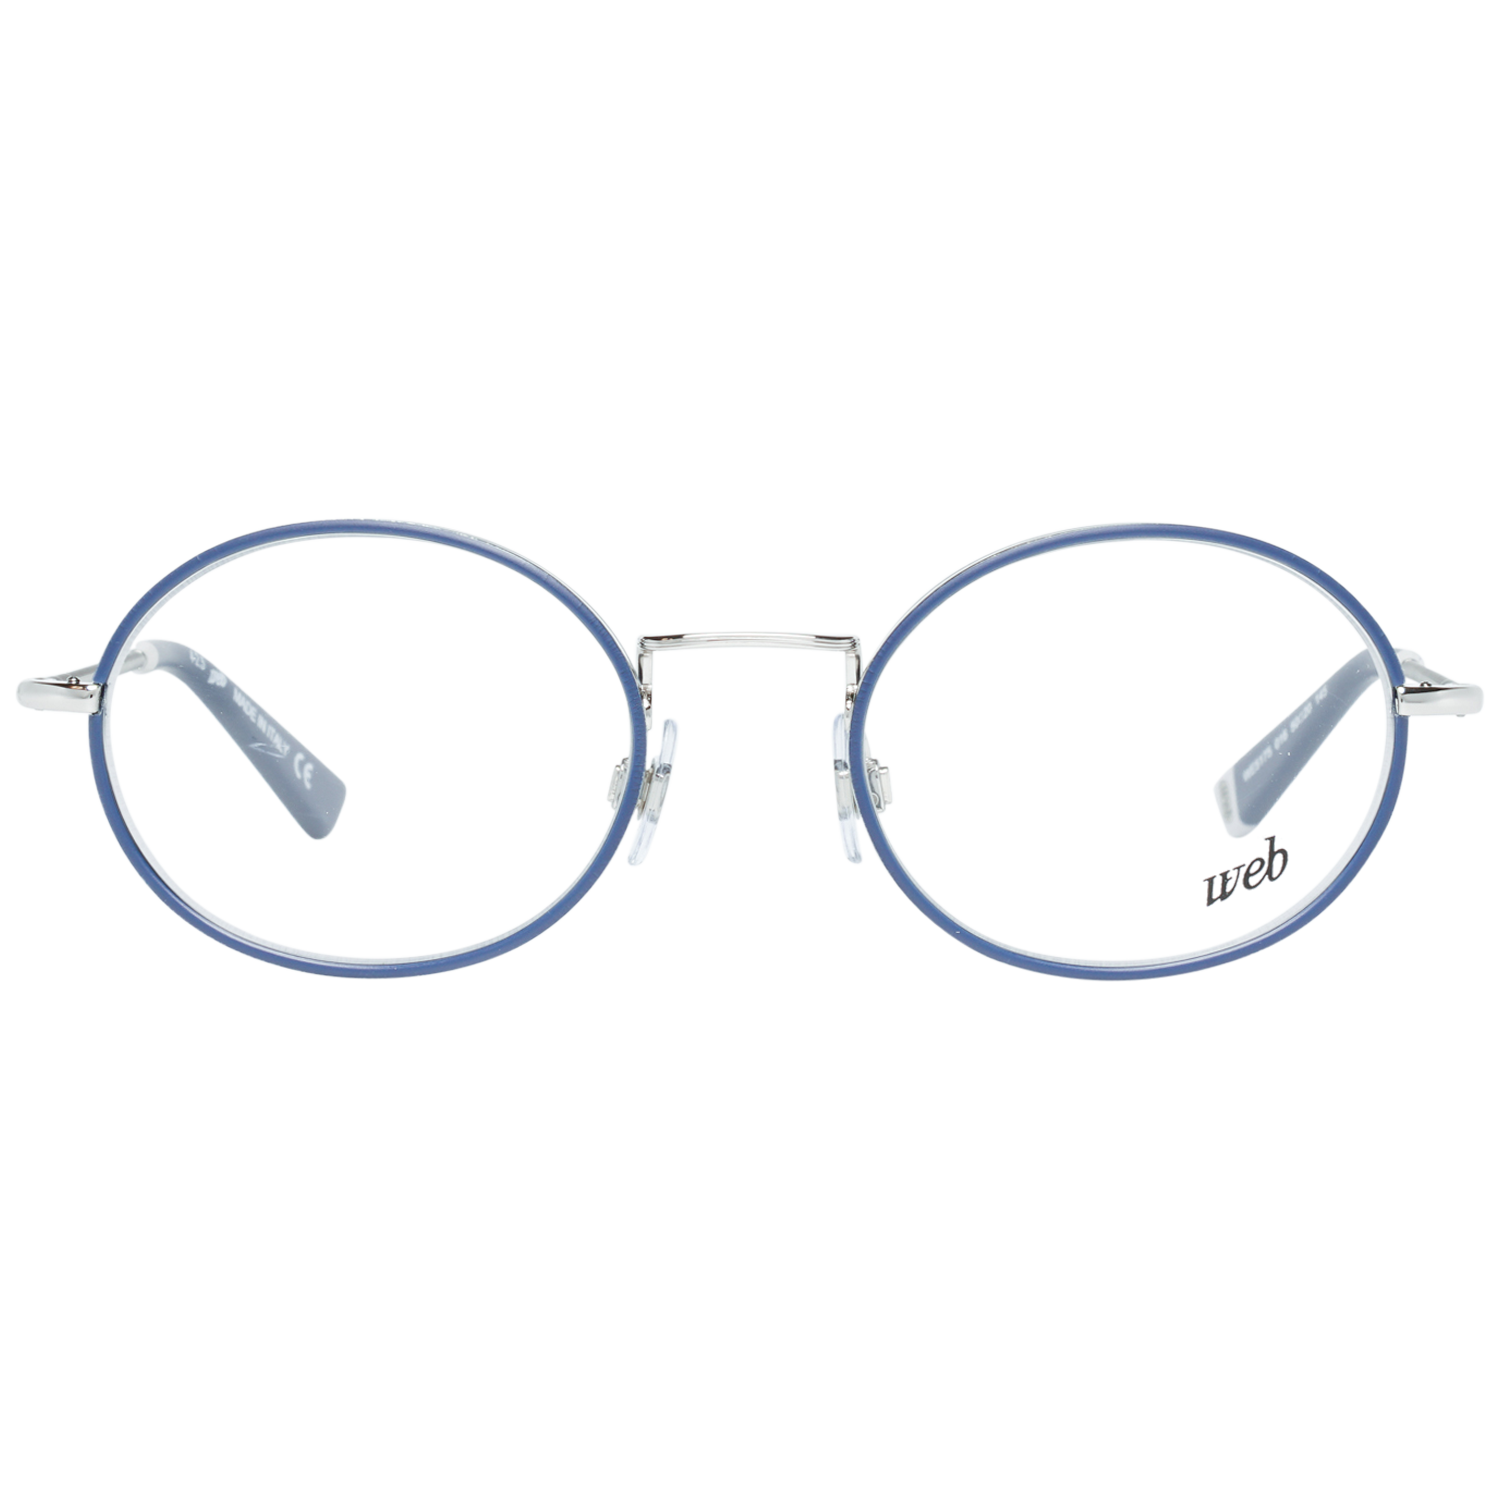 Web Frames Web  Glasses Optical Frame WE5177 016 51 Eyeglasses Eyewear UK USA Australia 